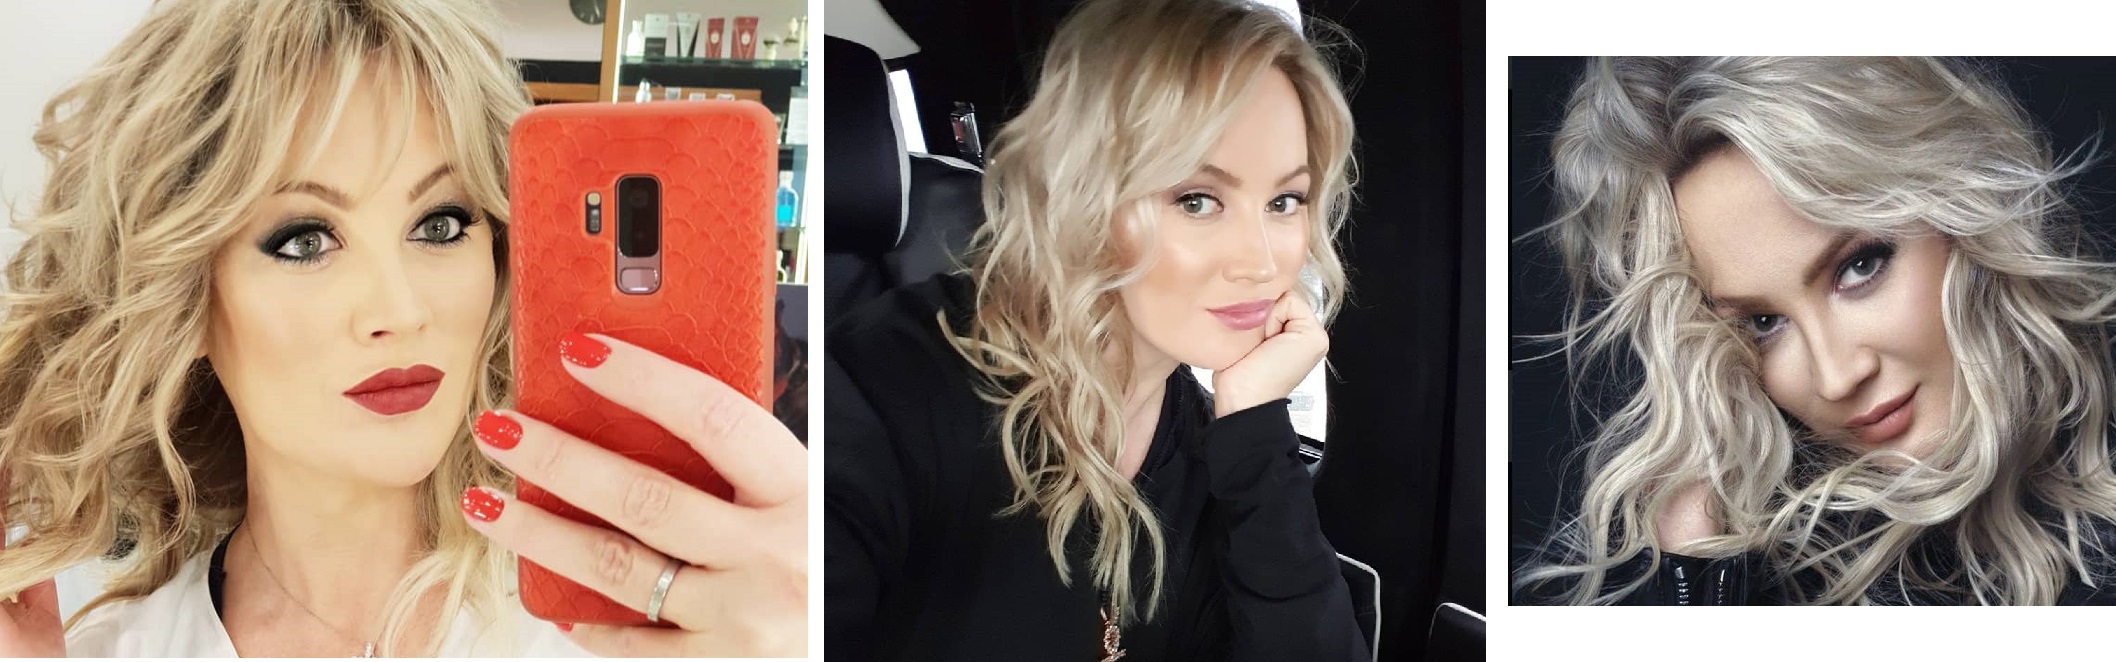 Жена михайлова до и после пластики фото